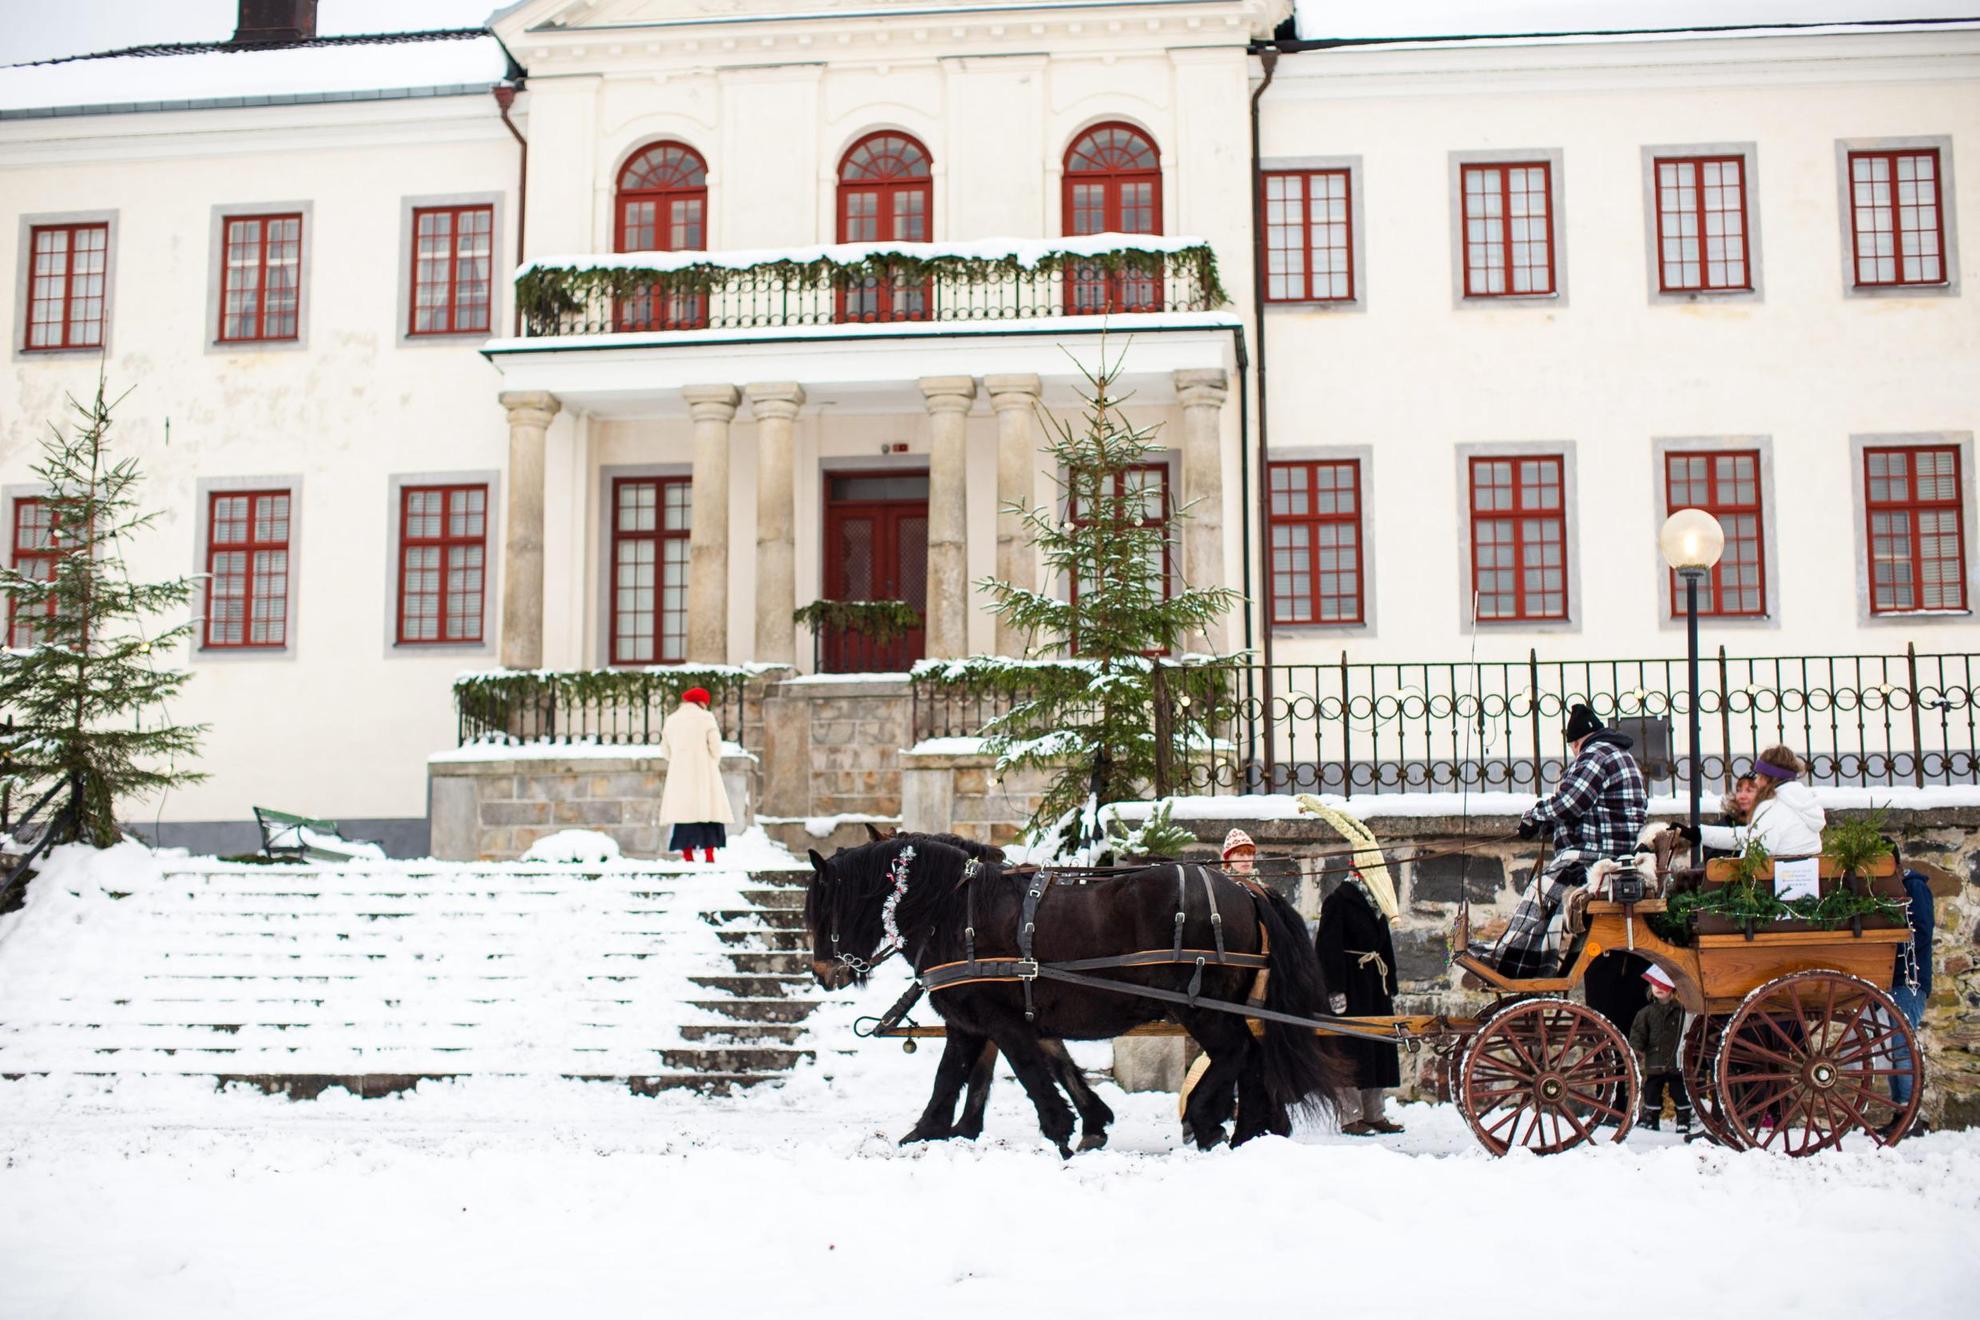 Un attelage se tient devant un grand bâtiment blanc durant l'hiver. Il y a de la neige au sol. Quelques personnes se tiennent debout à côté d'un cheval tandis que d'autres sont assises dans la calèche.